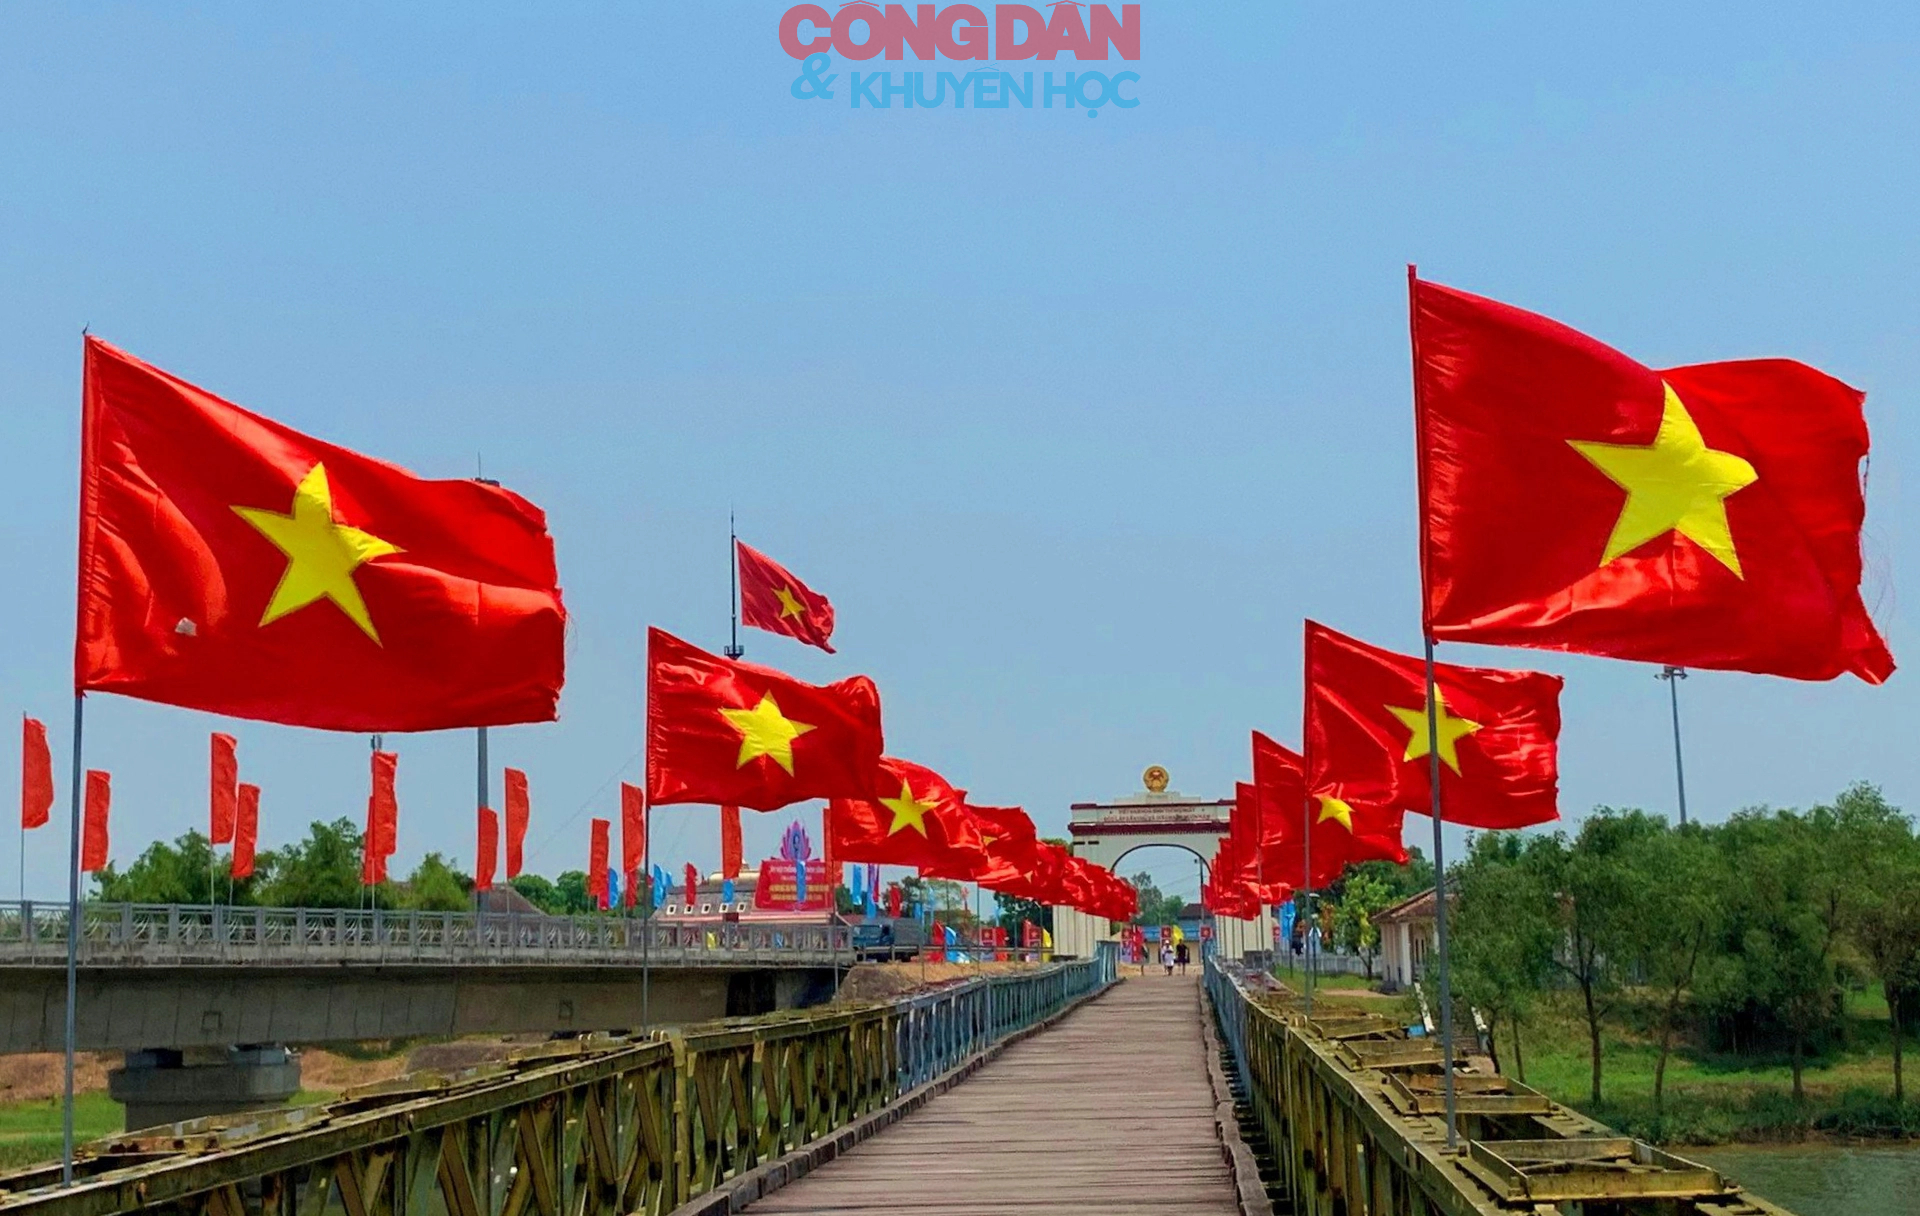 Tự hào màu cờ đỏ thắm bay trên cầu Hiền Lương- Ảnh 5.